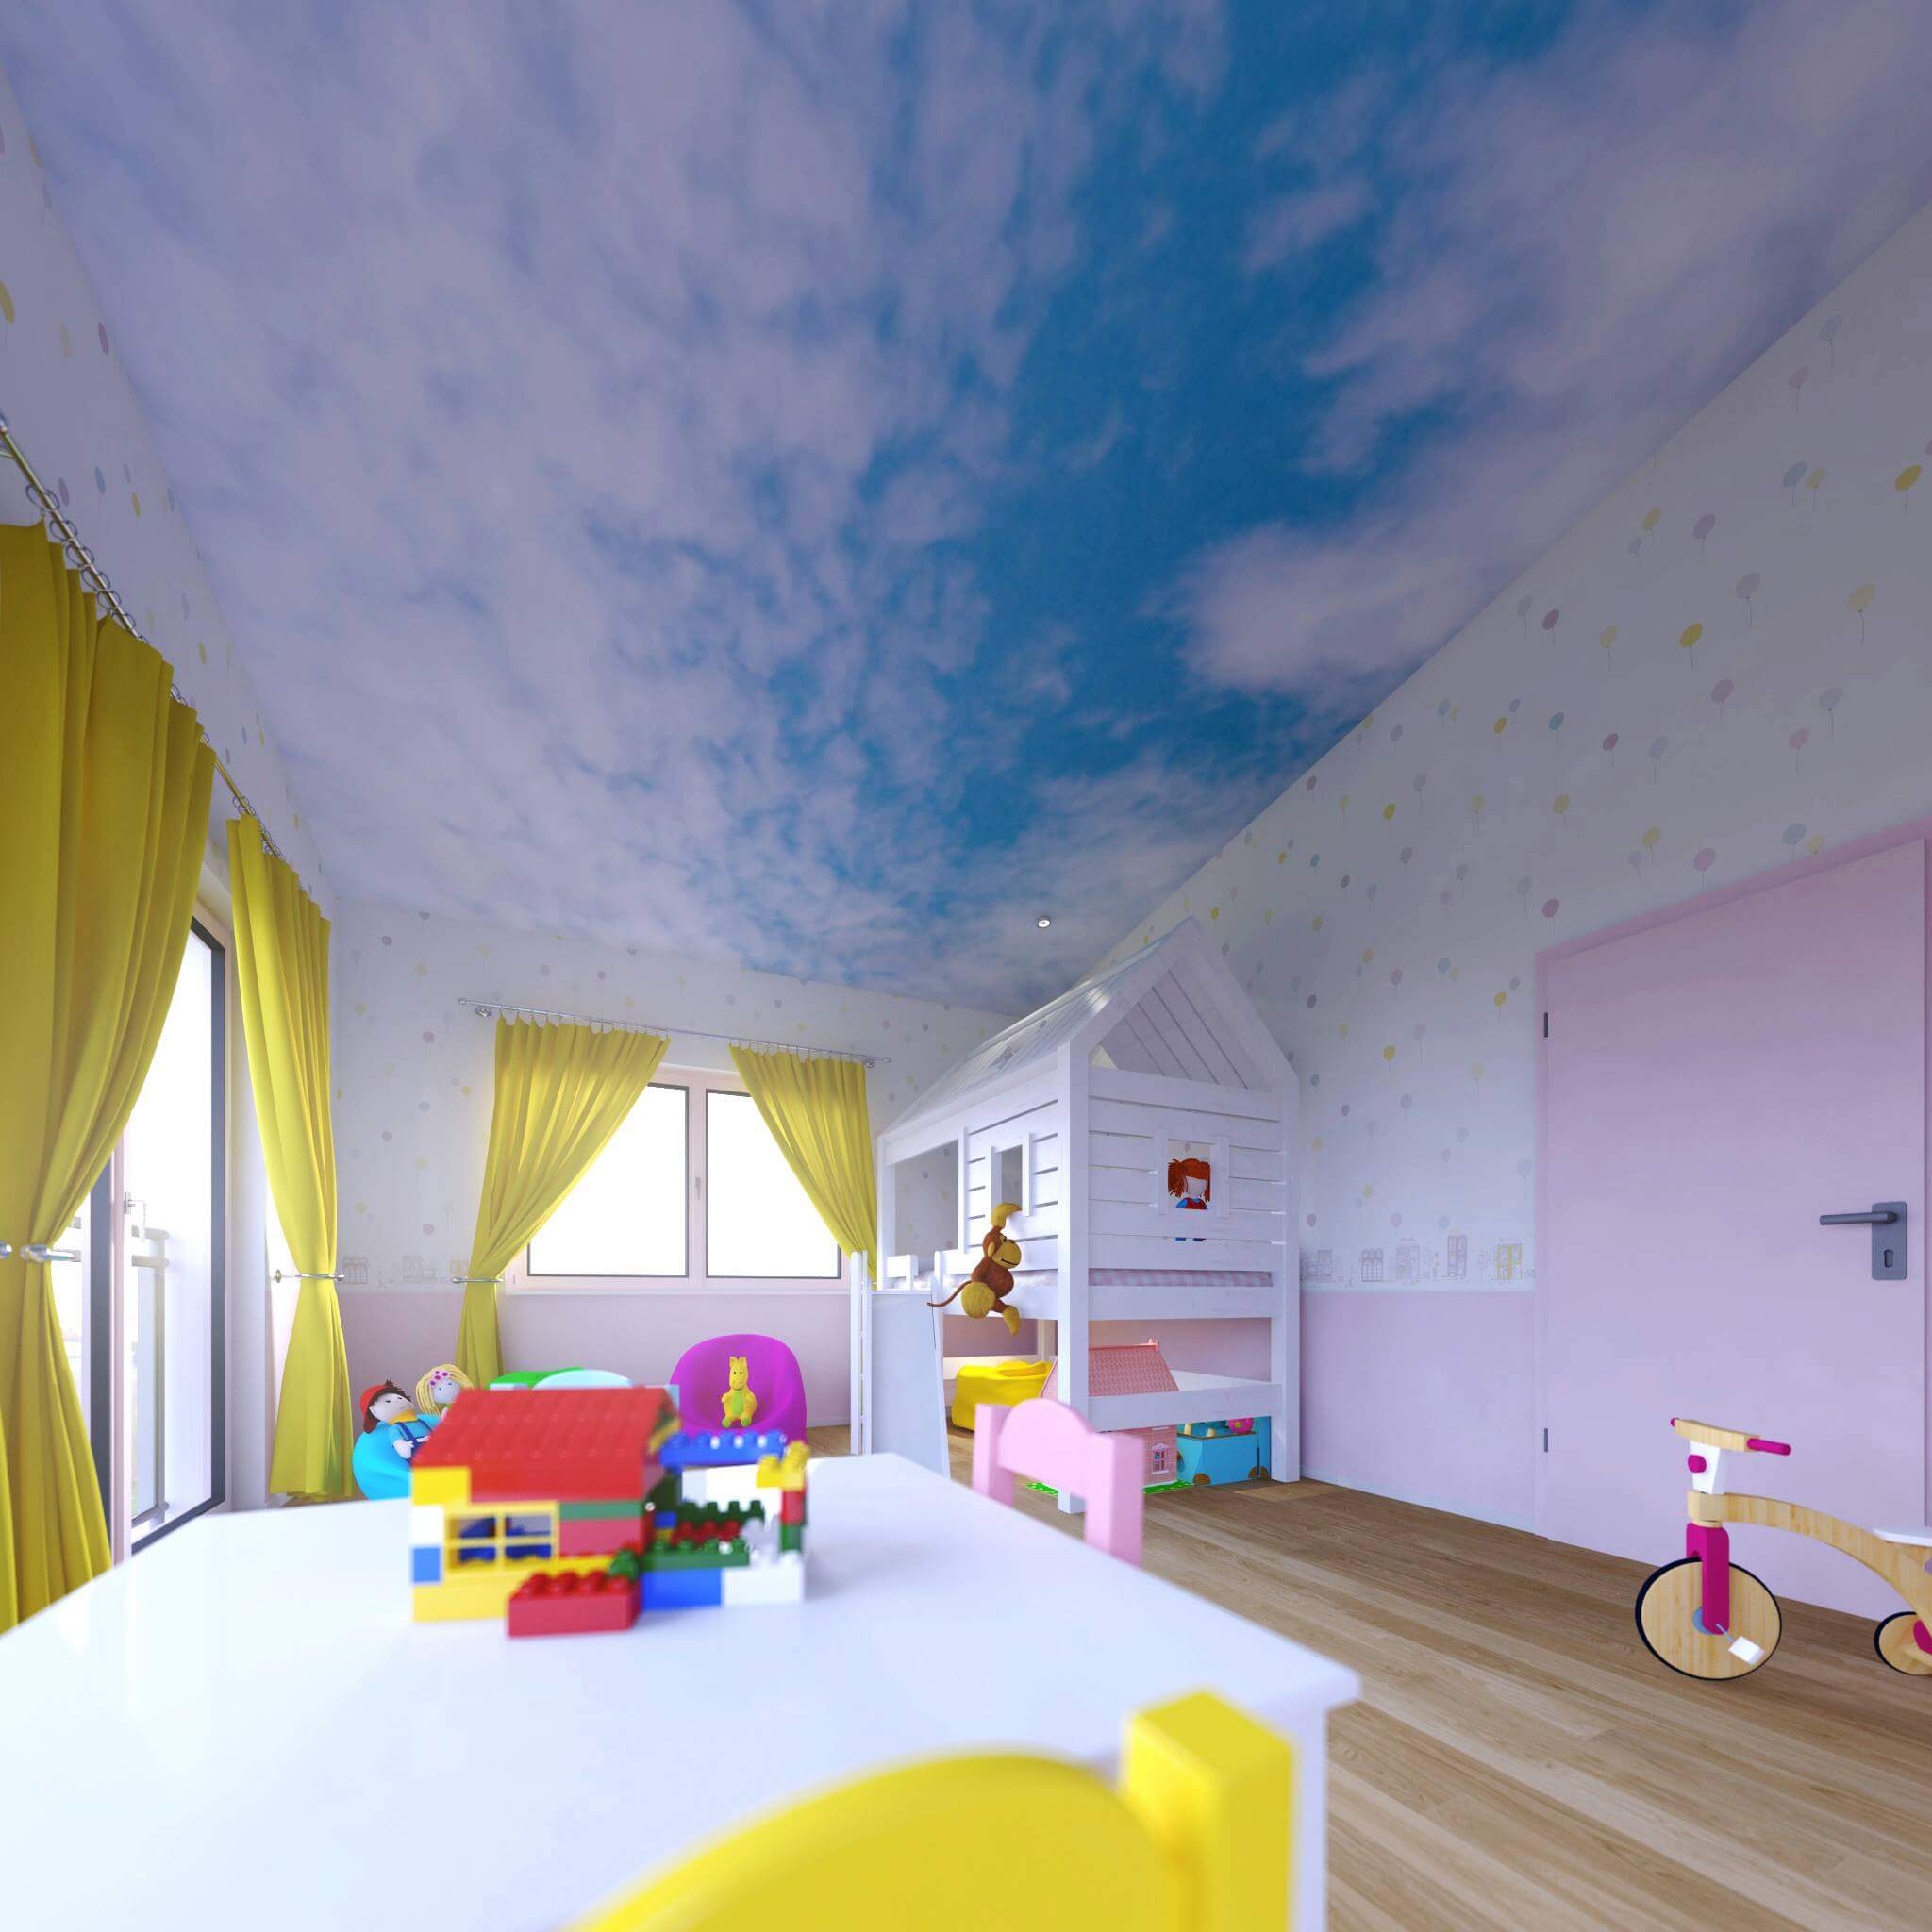 Blaue Decke mit Wolken als Stilelement im modernen Kinderzimmer Design